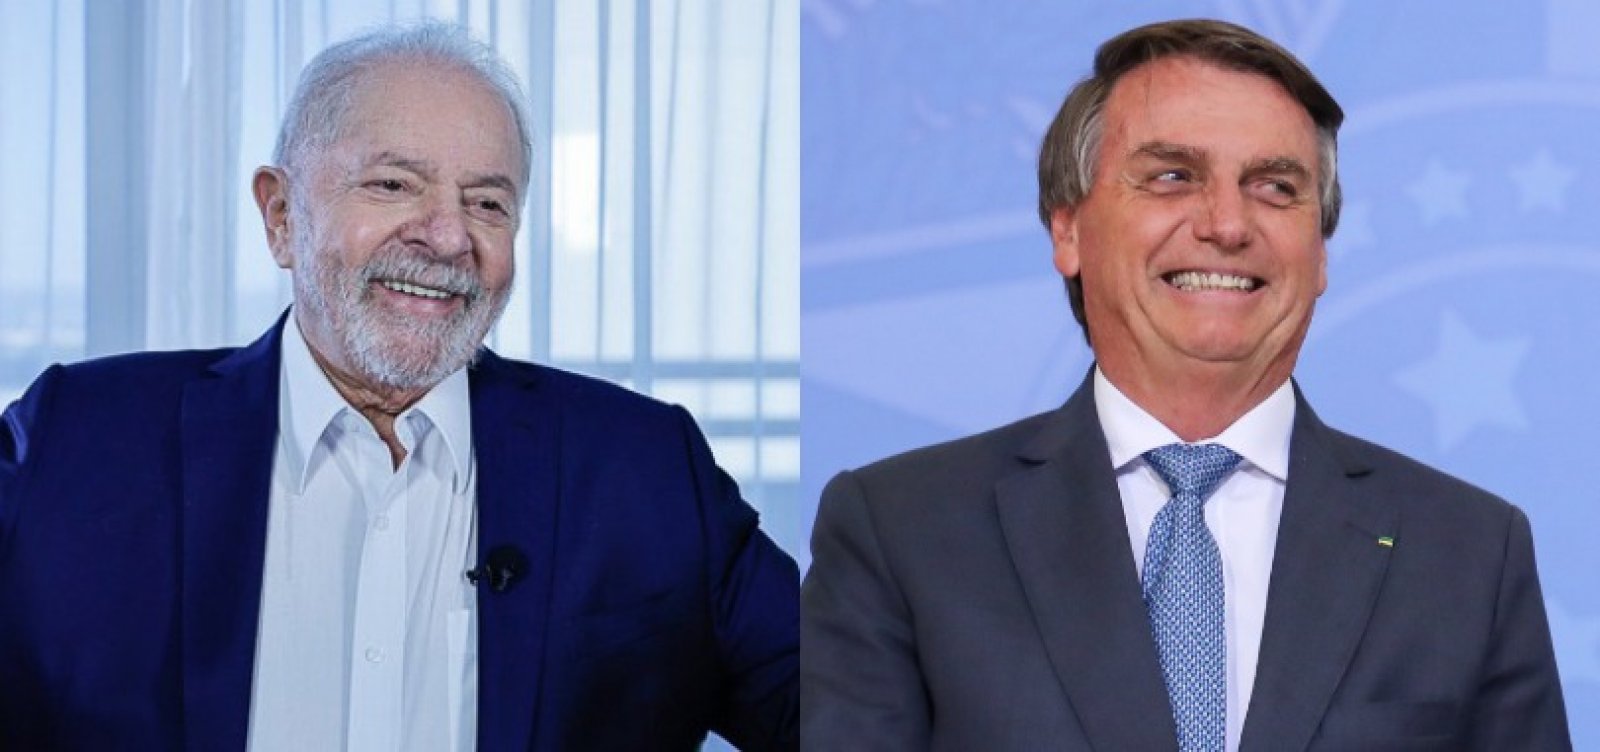 Modalmais/Futura: Bolsonaro lidera disputa contra Lula com 40,1% em pesquisa